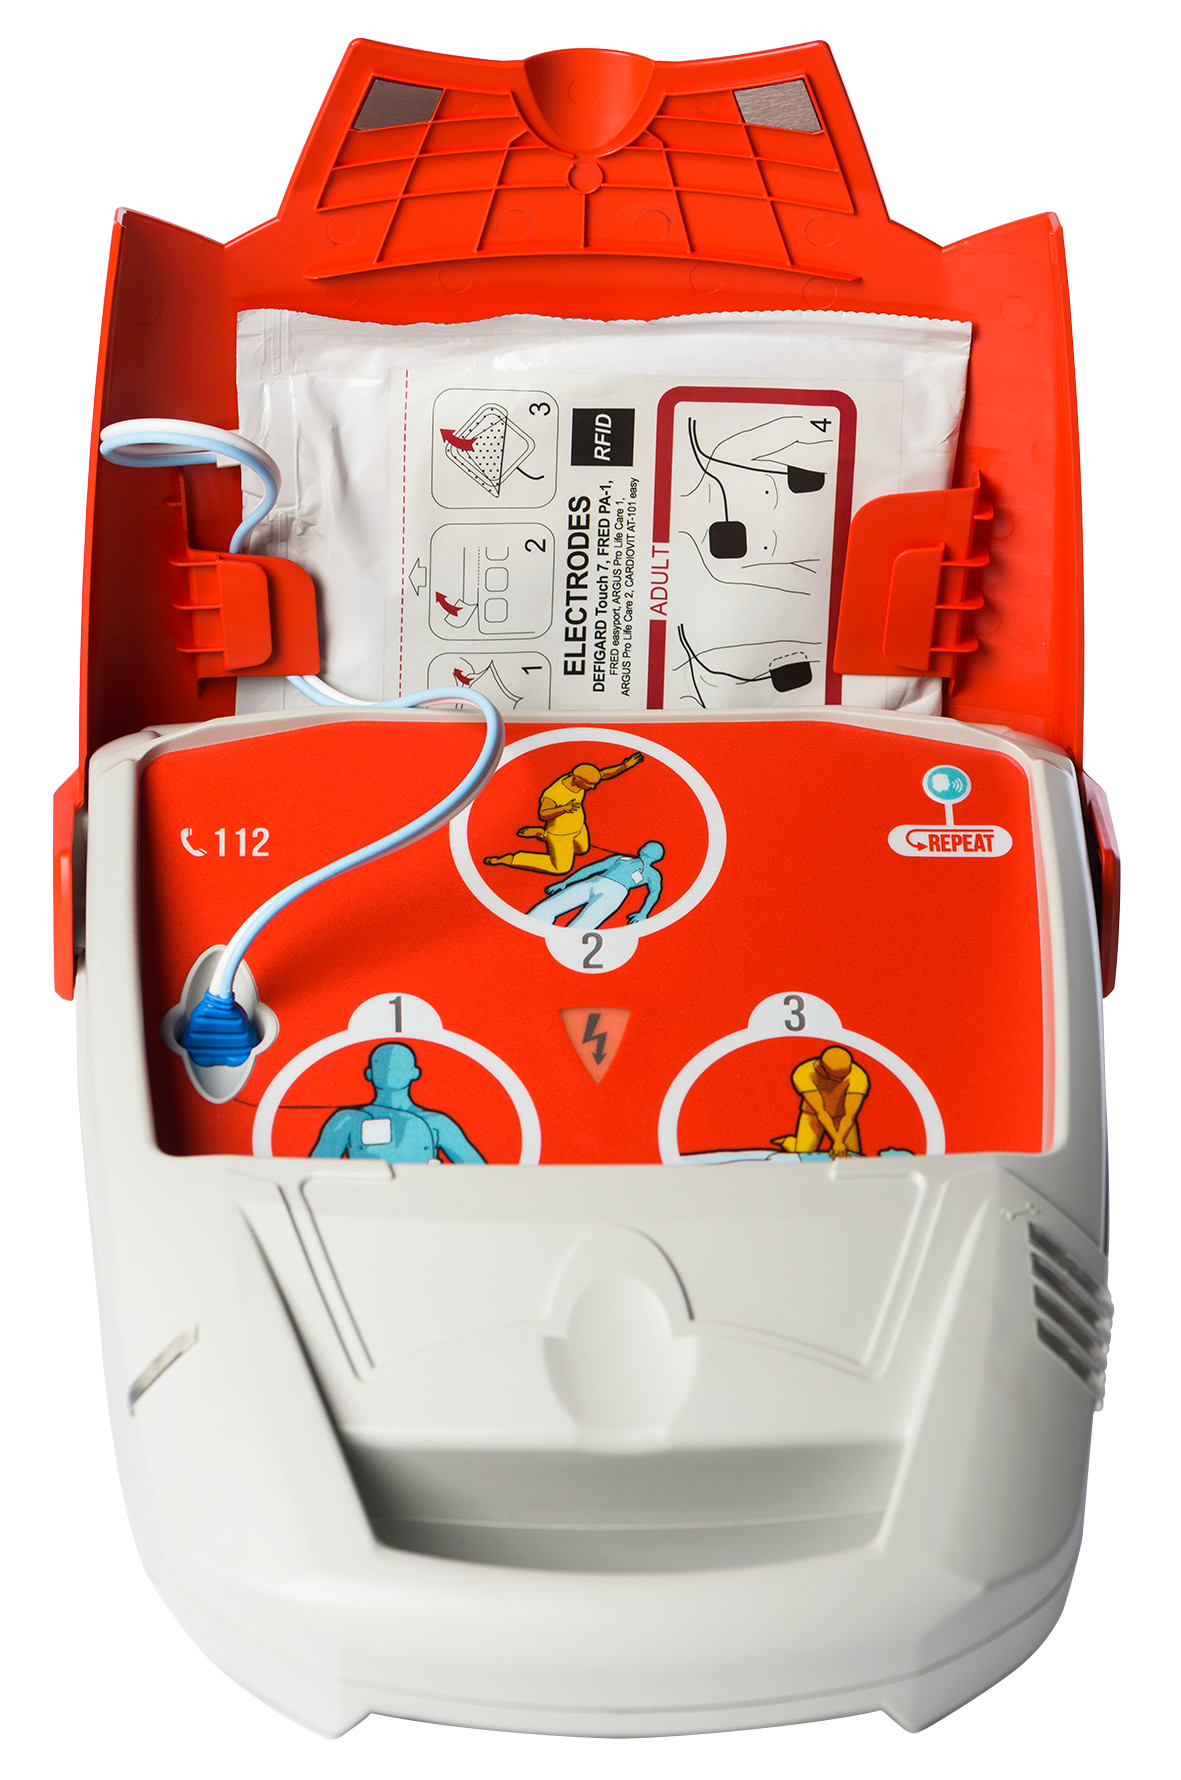 Schiller Fred PA-1 defibrillator - volautomatisch - Engels